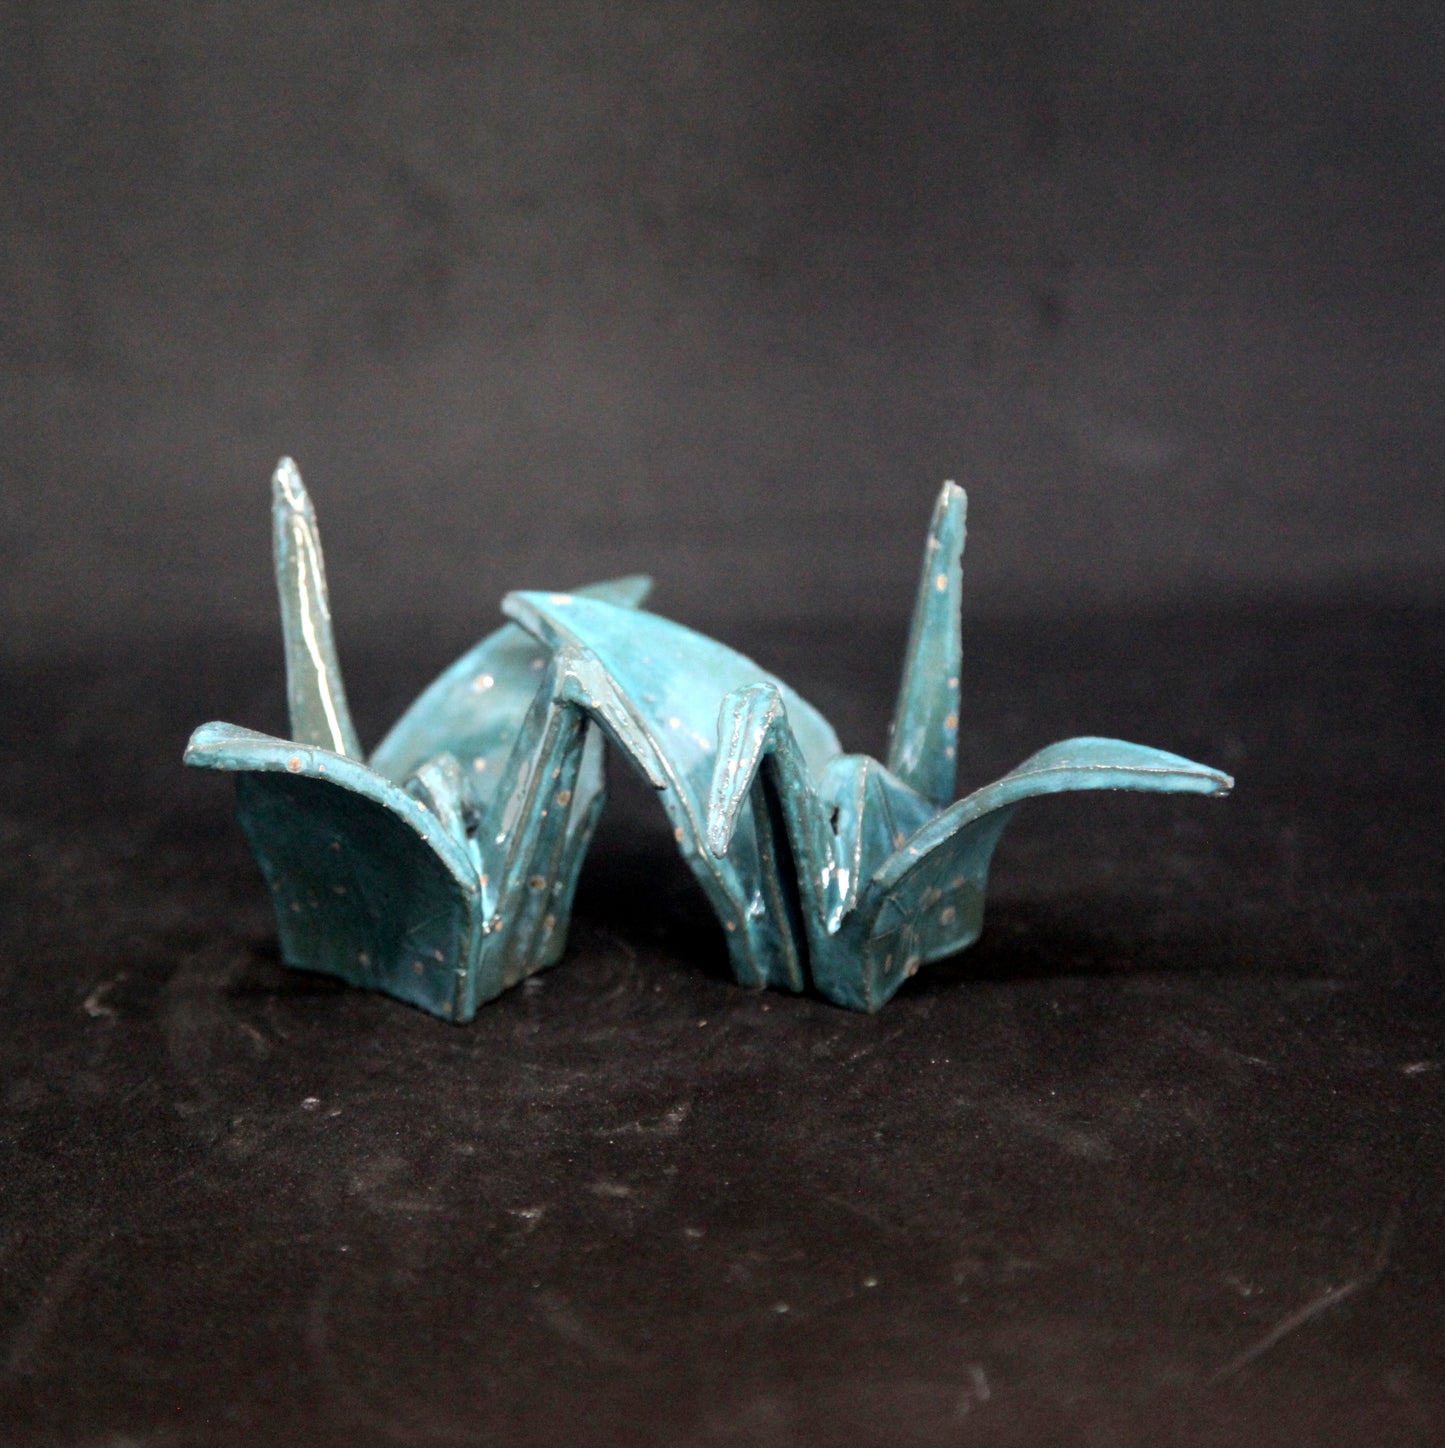 Crystallizing tuquoise birds - origami pattern